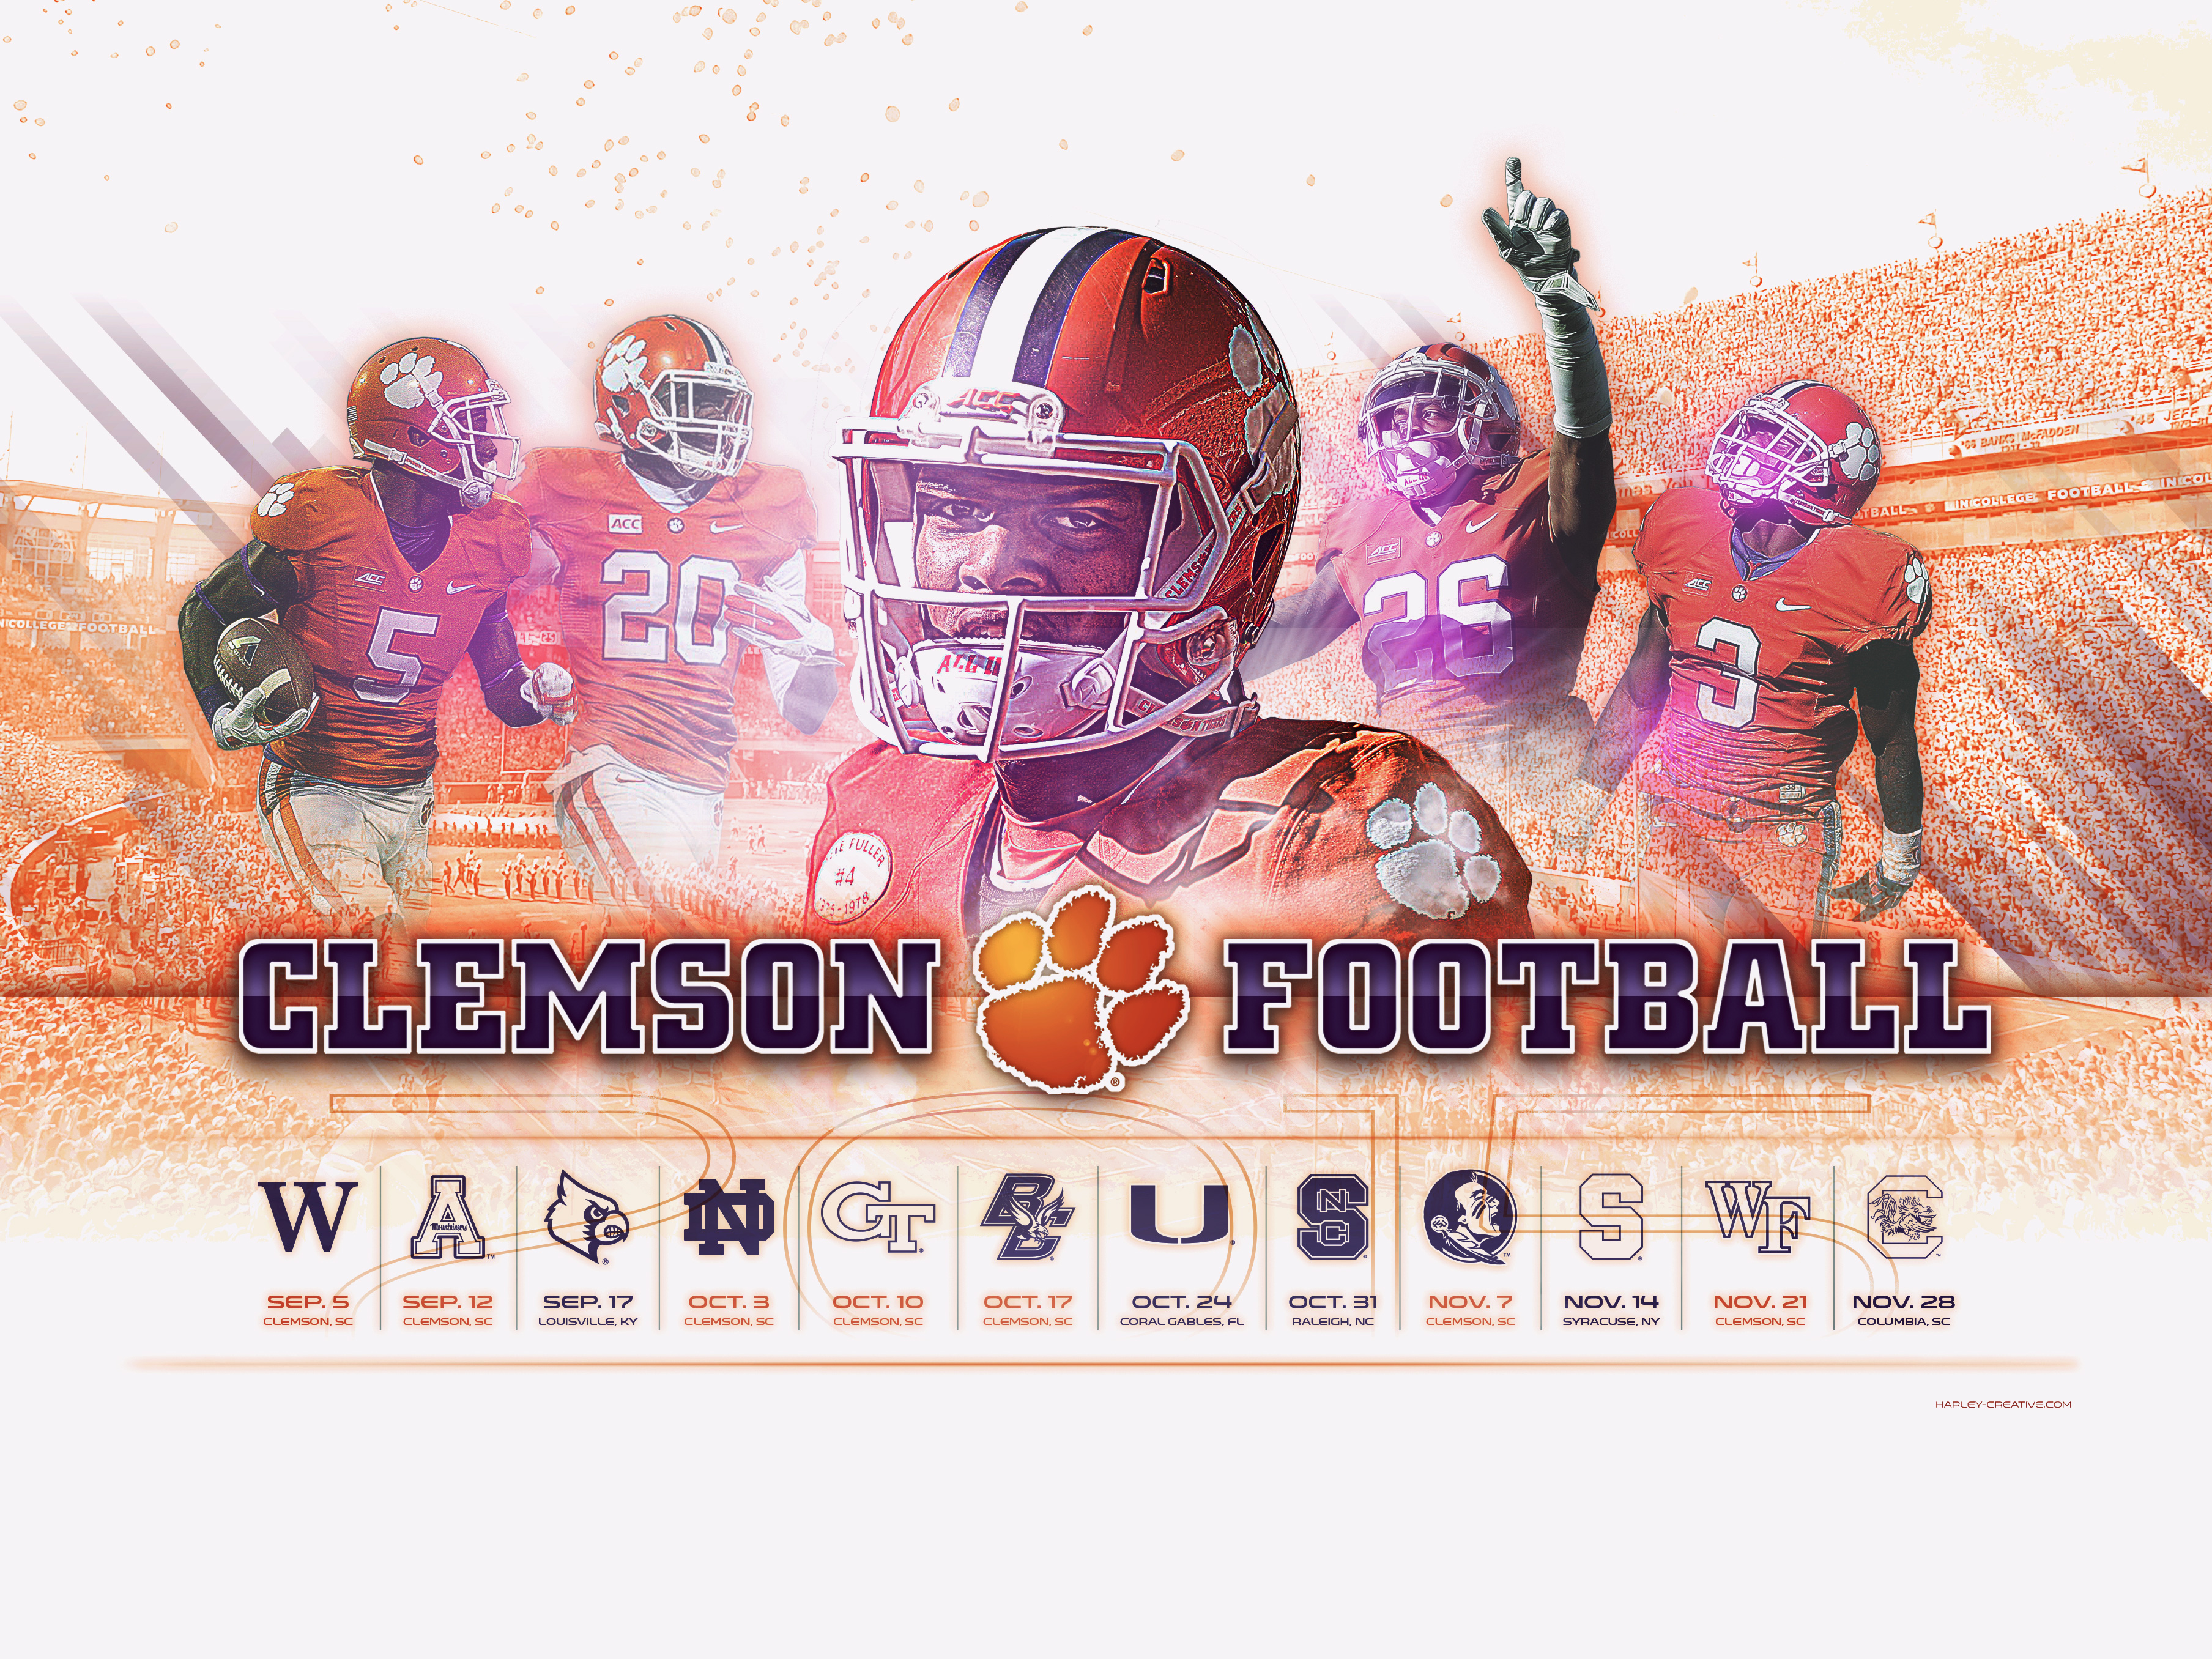 Clemson Football Wallpaper Clemson Football Schedule 2015 Wallpaper